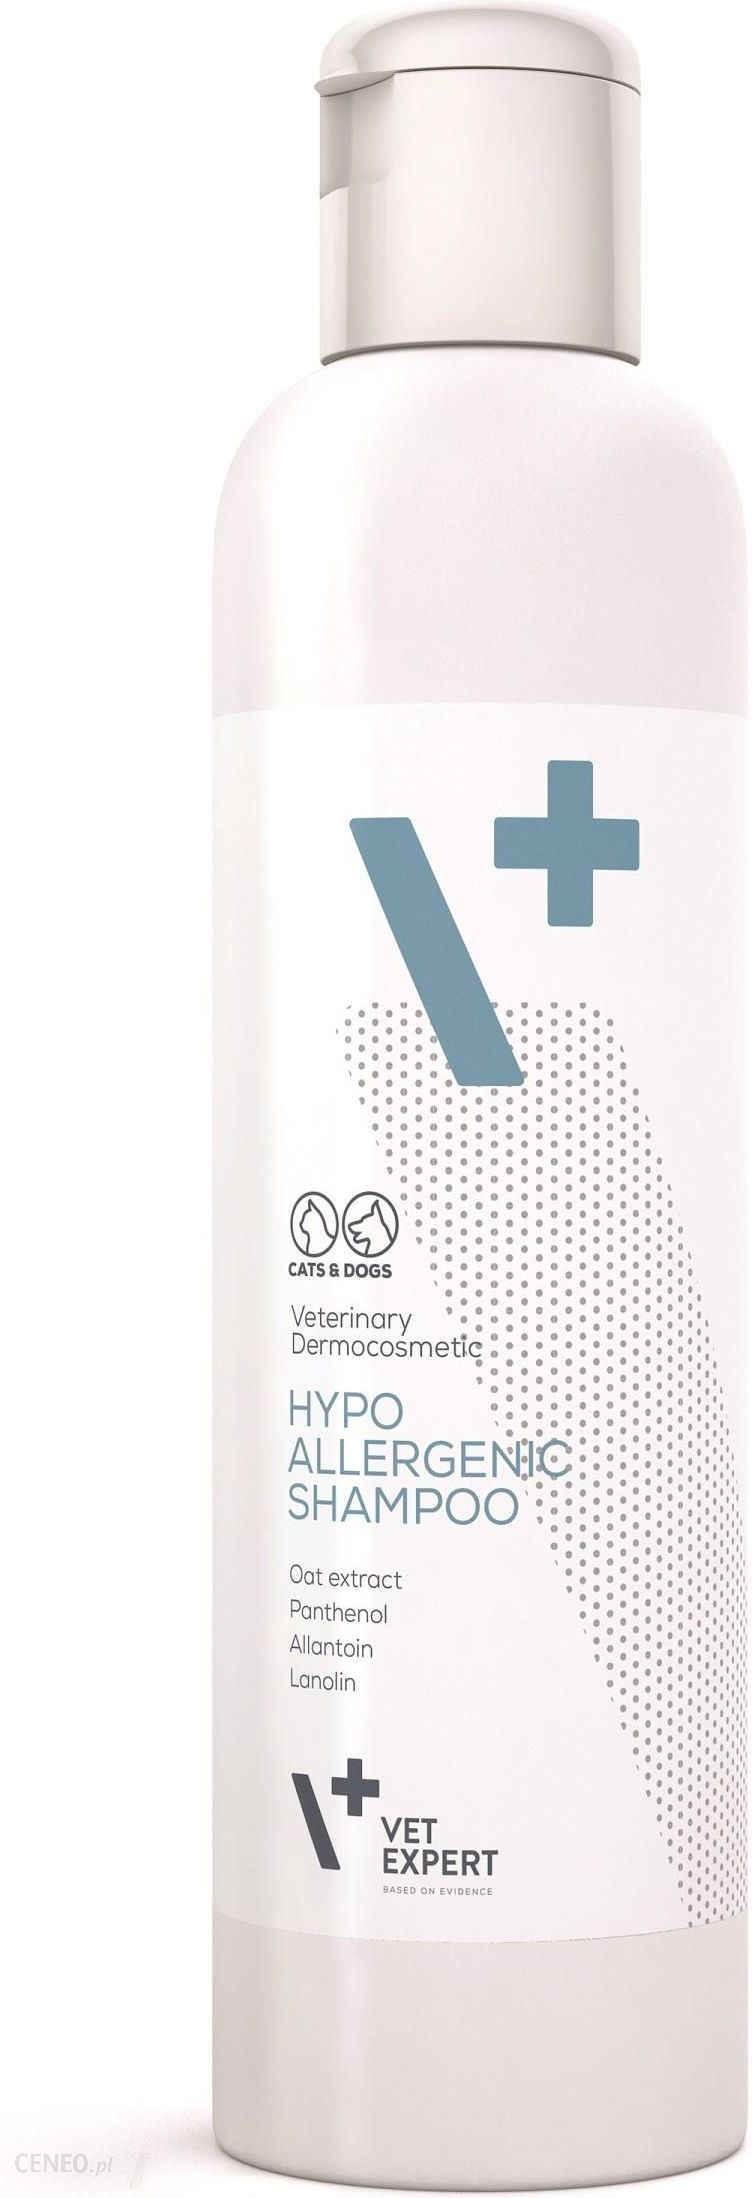 szampon przeciw alergiczny hypo